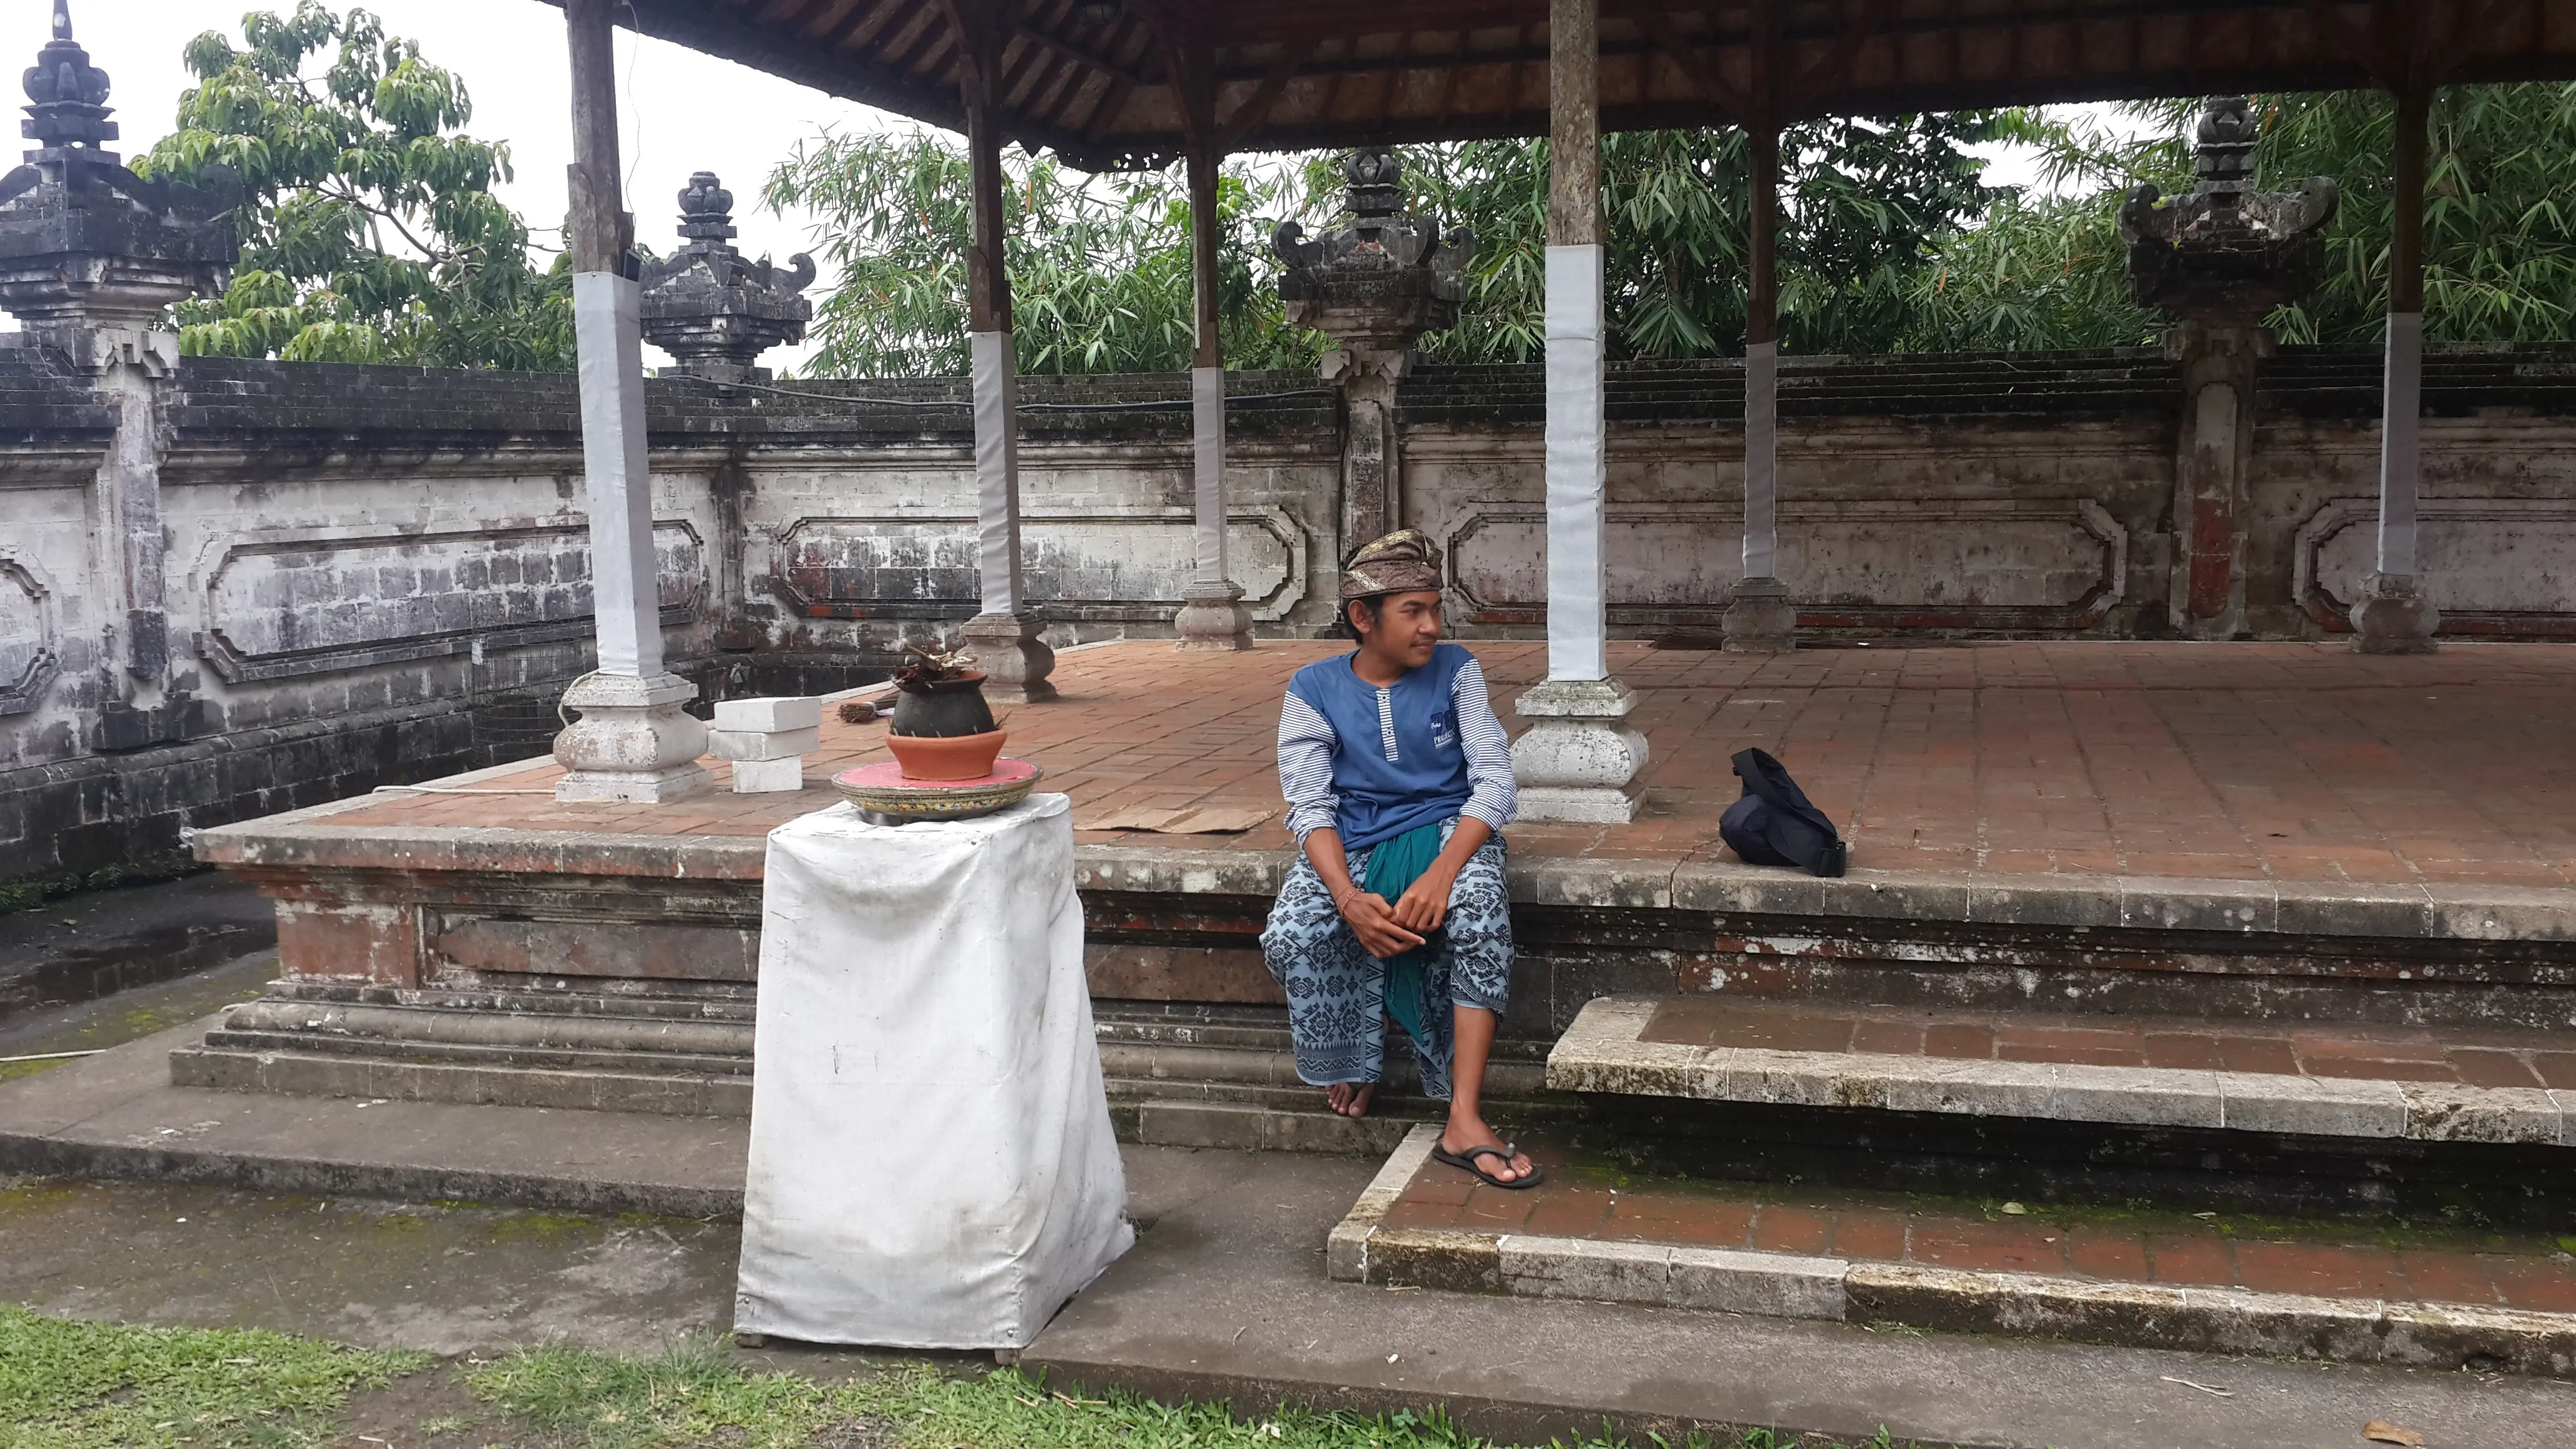 Warga Desa Tribuana yang sehari-harinya menjaga Pura Lempuyang, Kadek Suanarta (19), bercerita soal Gunung Agung. (Liputan6.com/Putu Merta Surya Putra)